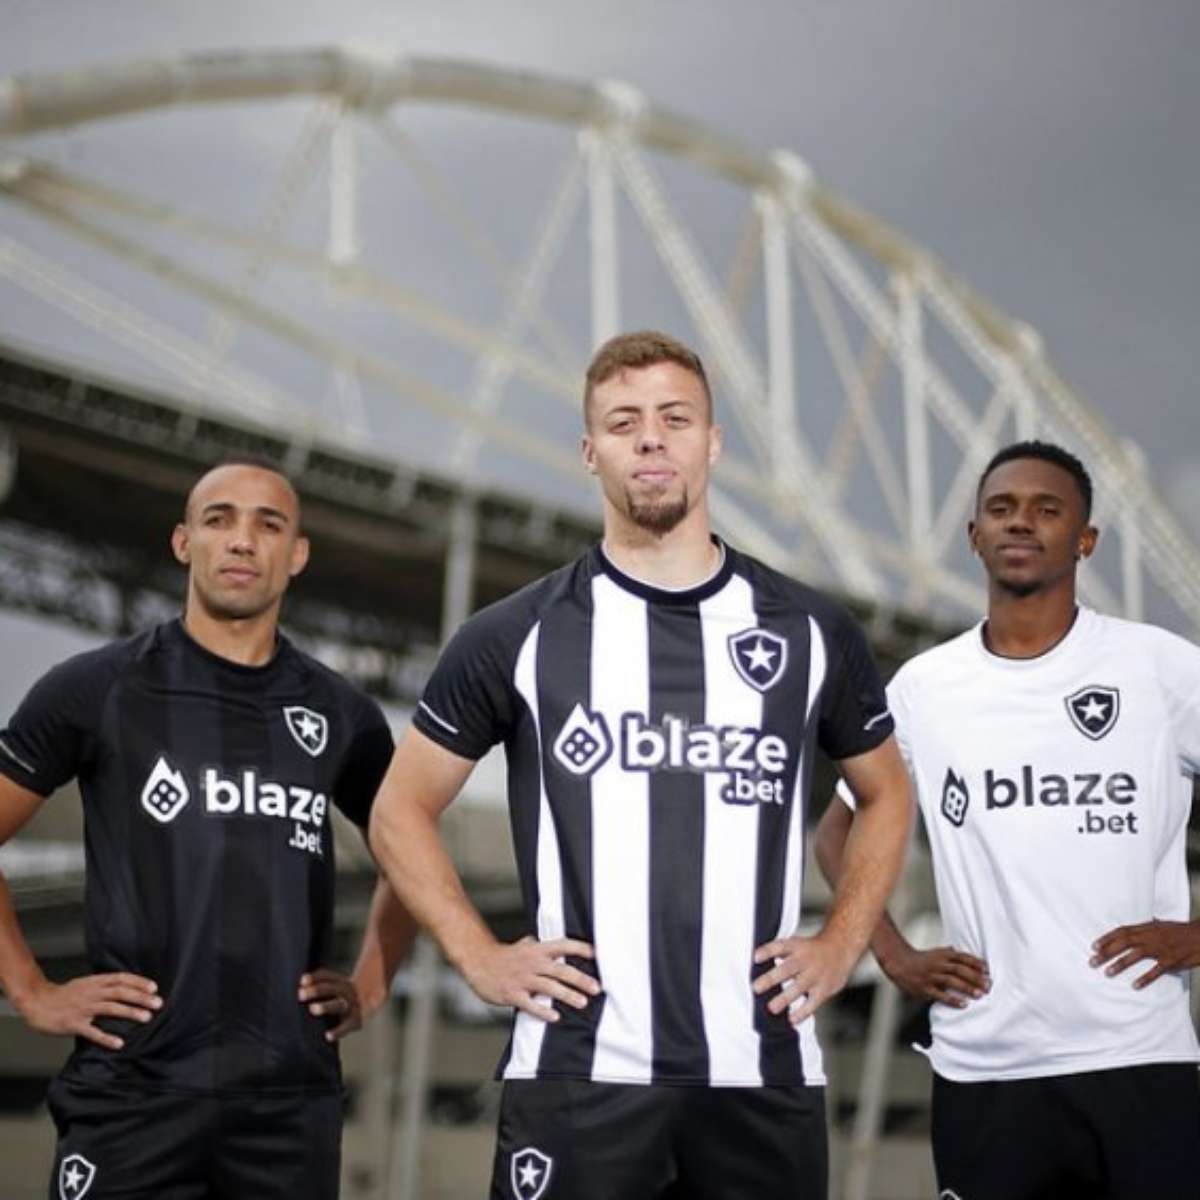 Botafogo de Futebol e Regatas - Nova parceria